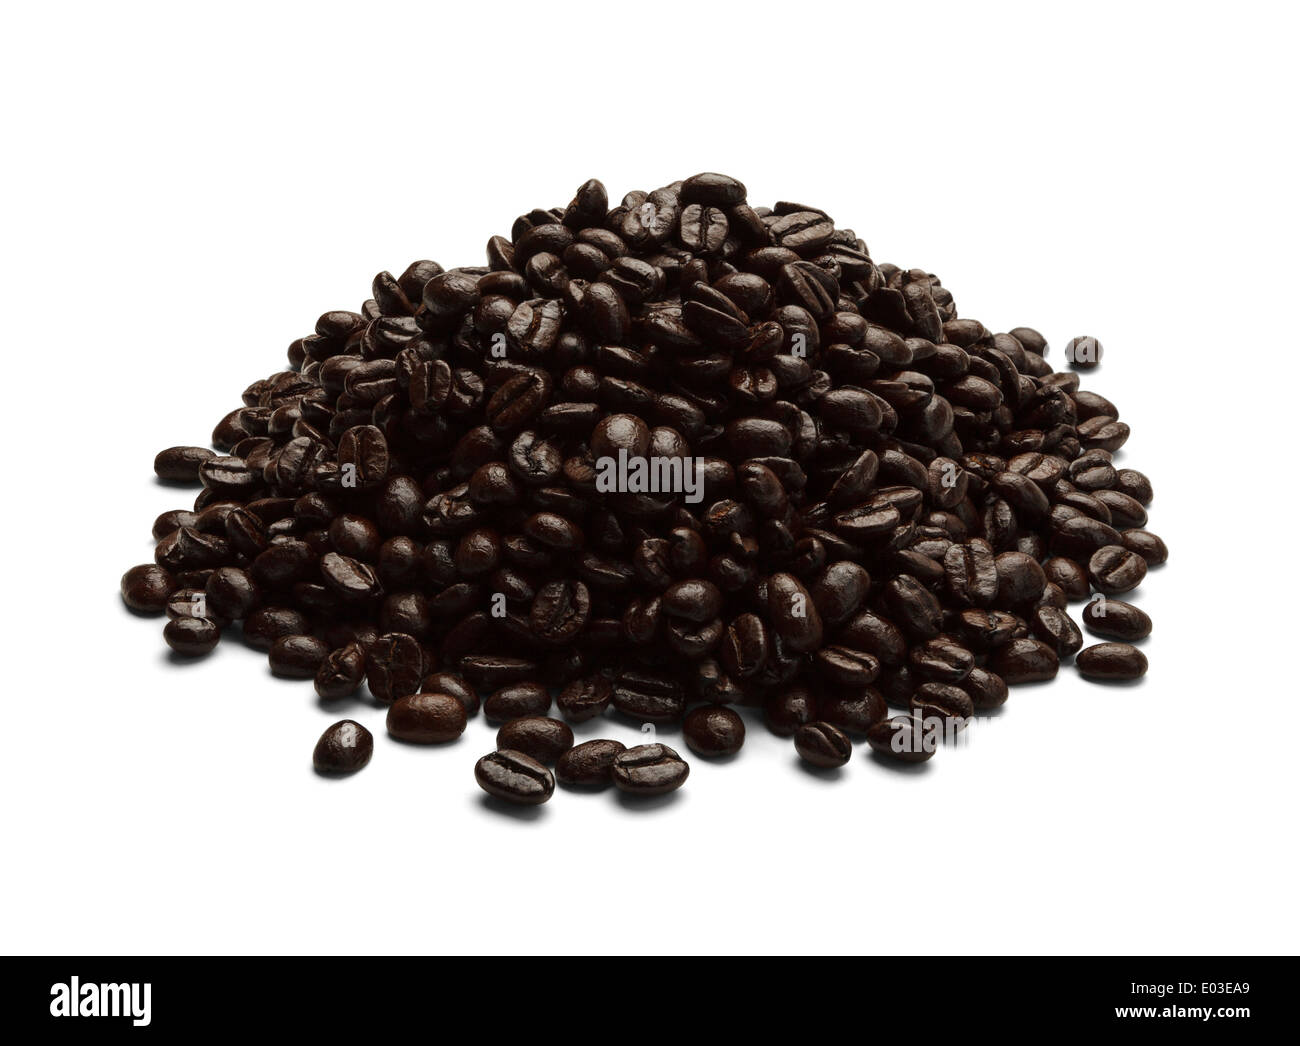 Haufen von schwarzen Kaffee Bohnen, Isolated on White Background. Stockfoto